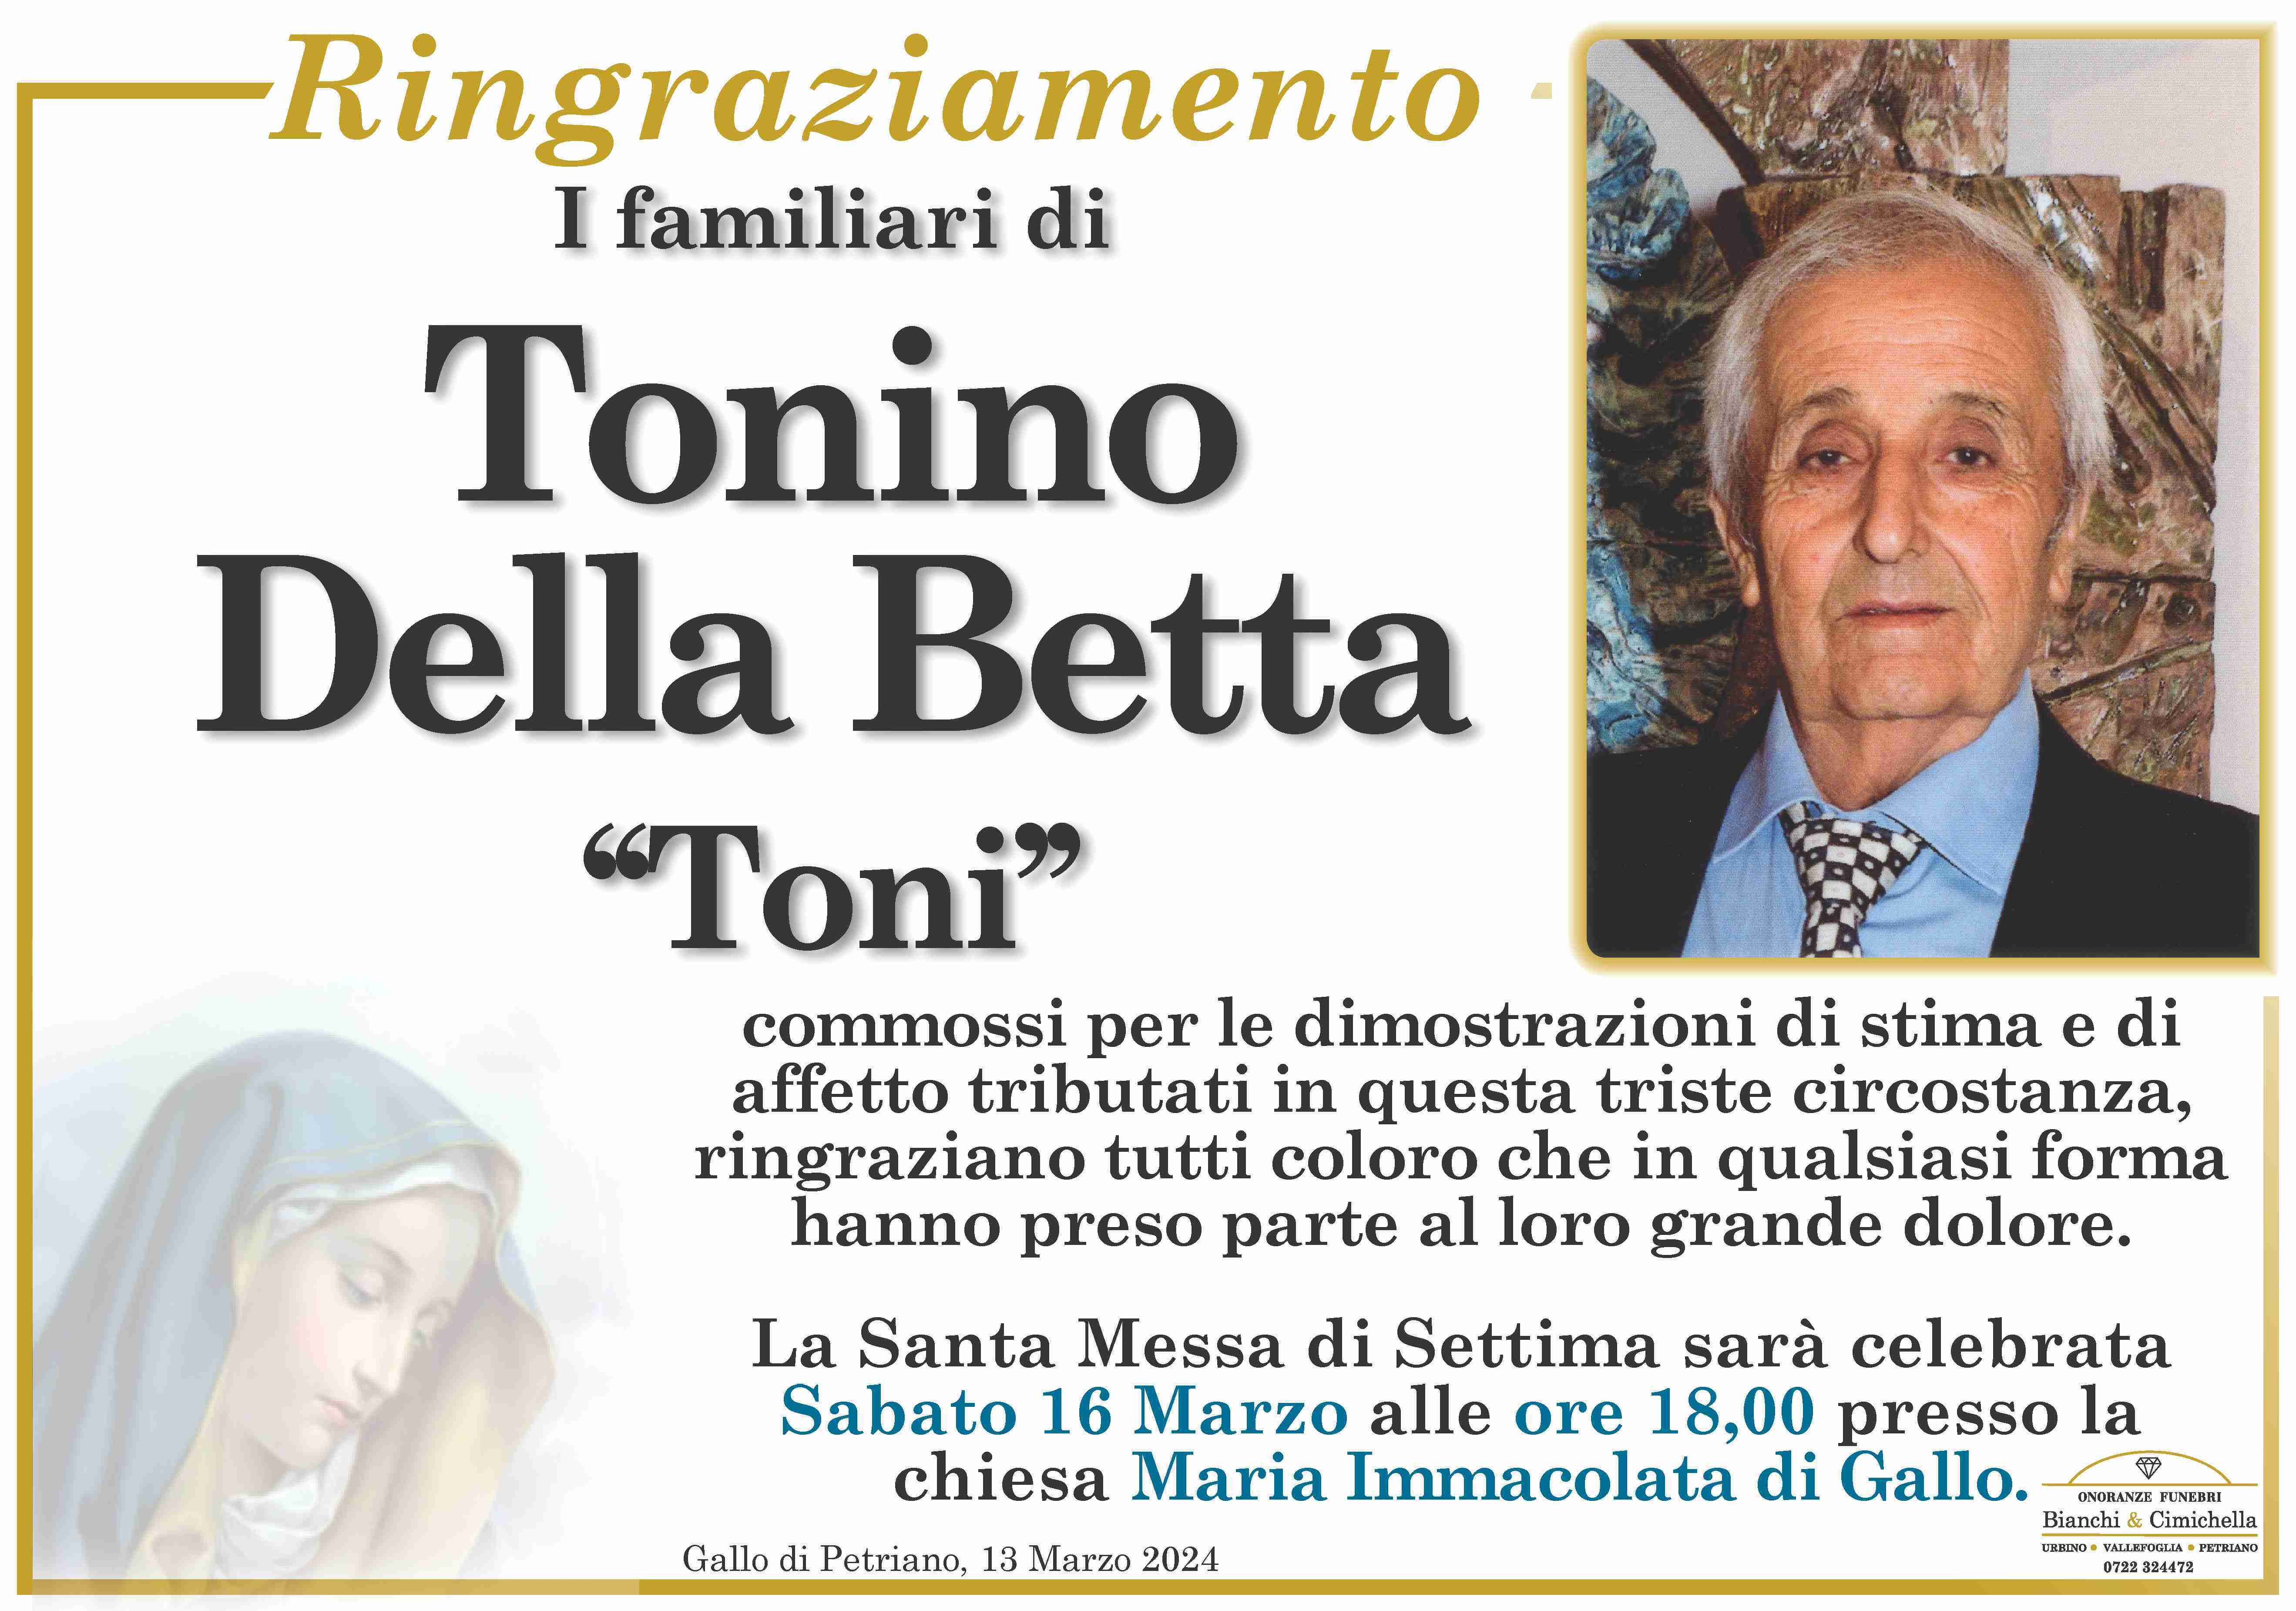 Tonino Della Betta